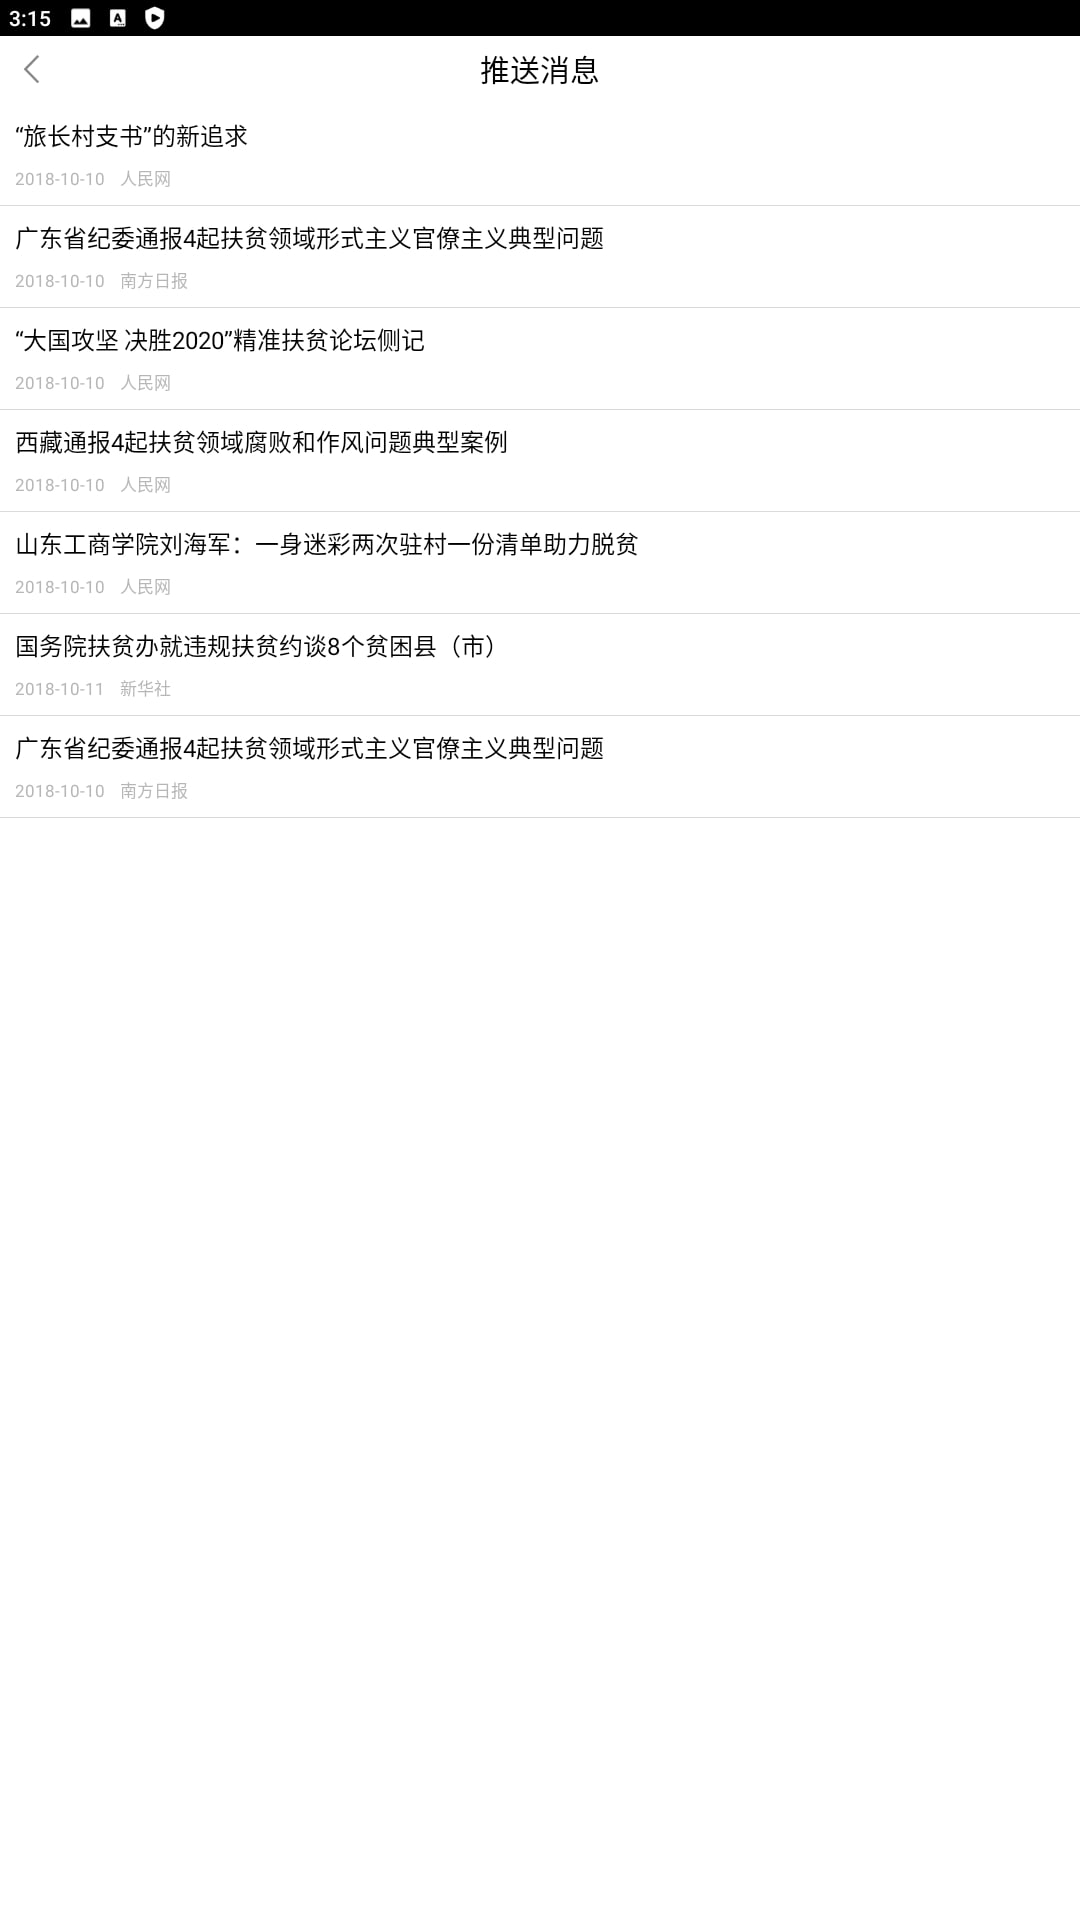 中国扶贫网app纯净版下载_中国扶贫网最新应用_下载中国扶贫网应用旧版v3.0.0